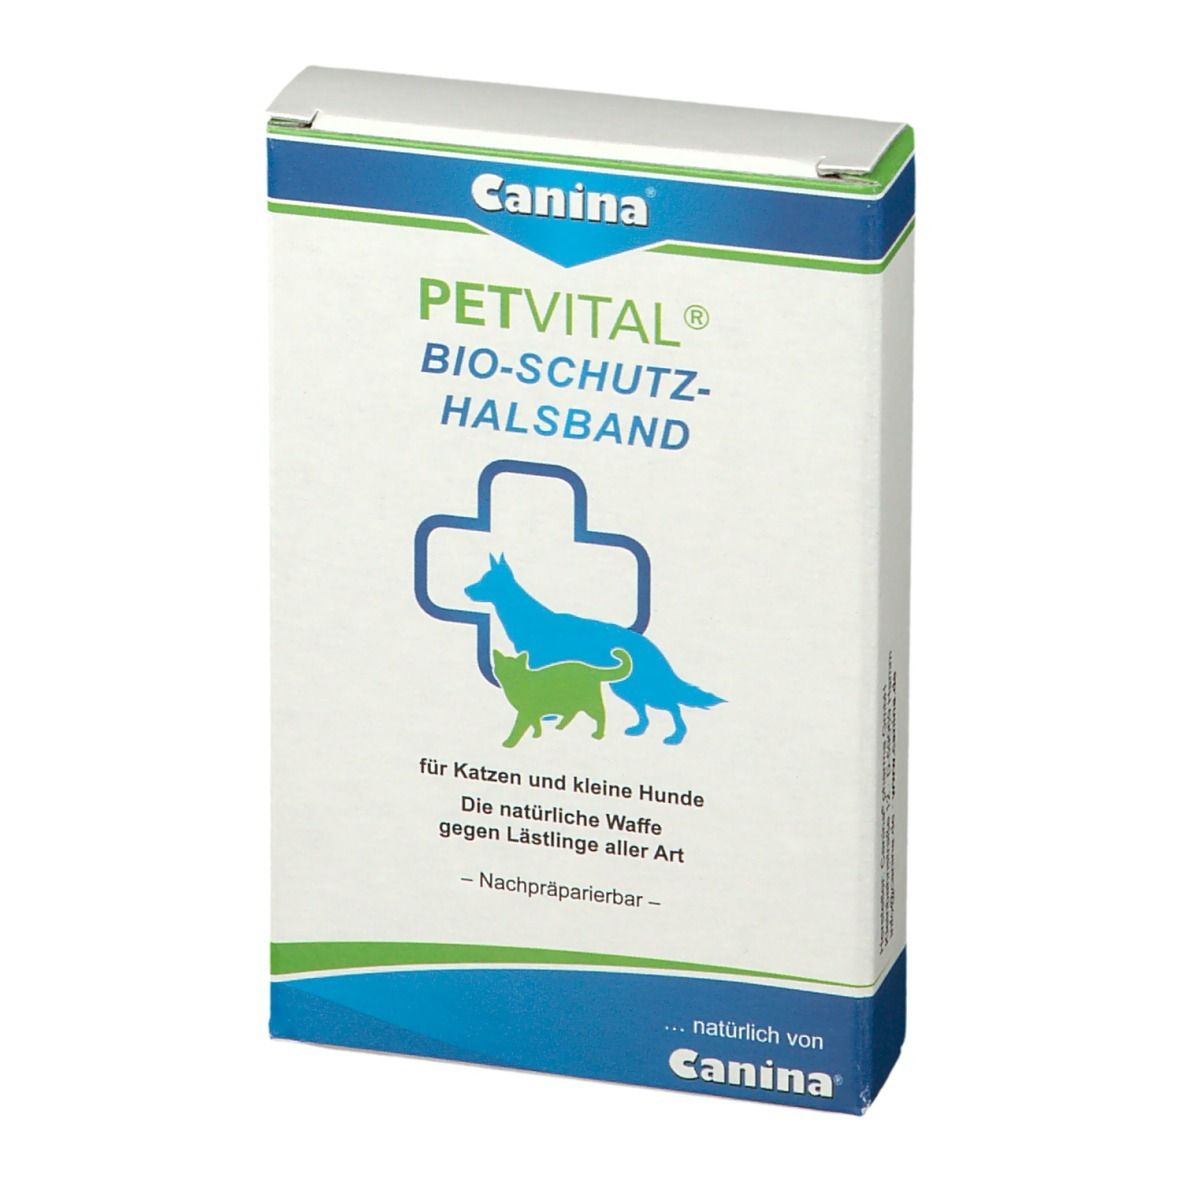 Canina® PETVITAL® Bio-Schutzhalsband für kleine Hunde und katzen 35 cm